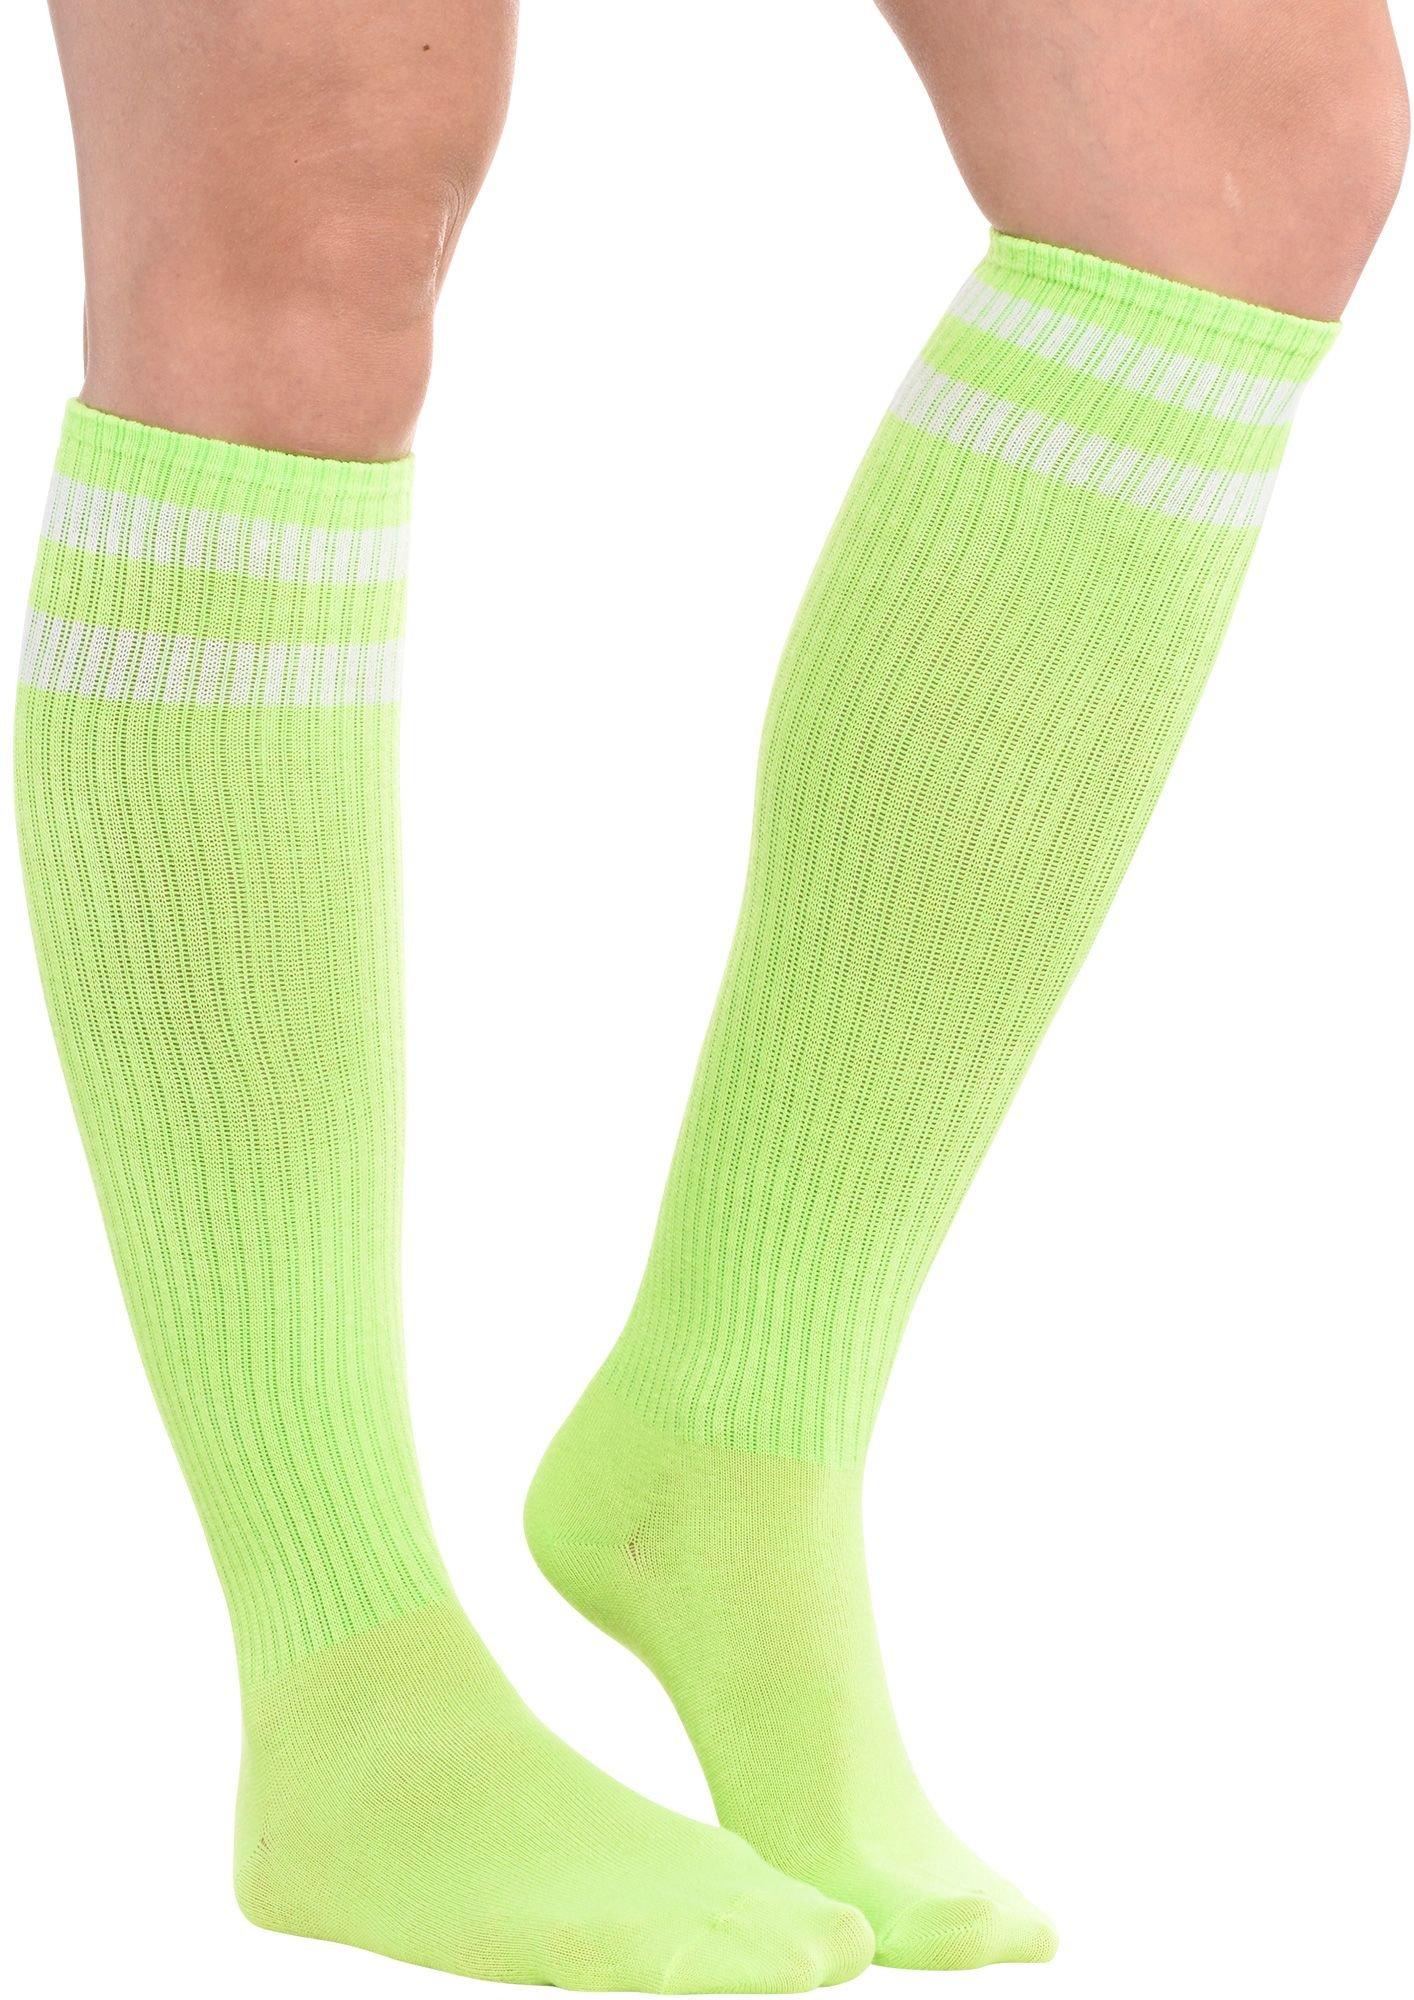 NEON RAINBOW KNEE Socks, Stripe Over the Knee Socks, Athletic Socks, 80s  Accessories -  Israel